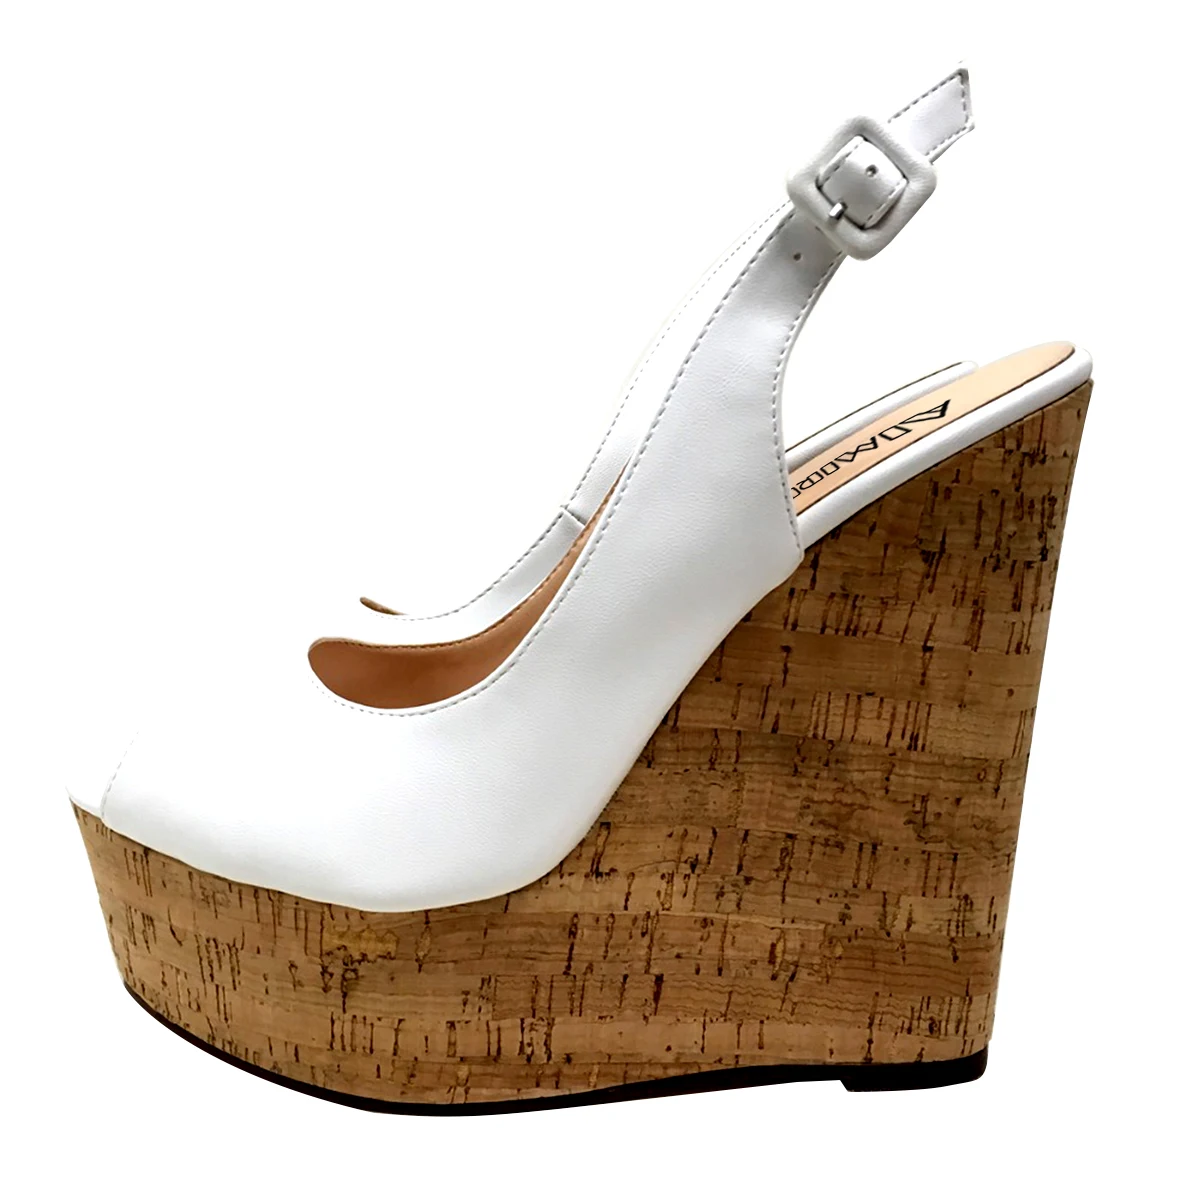 Aimirlly/женские туфли на танкетке из пробкового дерева; босоножки на высокой платформе; туфли-лодочки с петлей на пятке; удобная летняя обувь белого цвета ручной работы